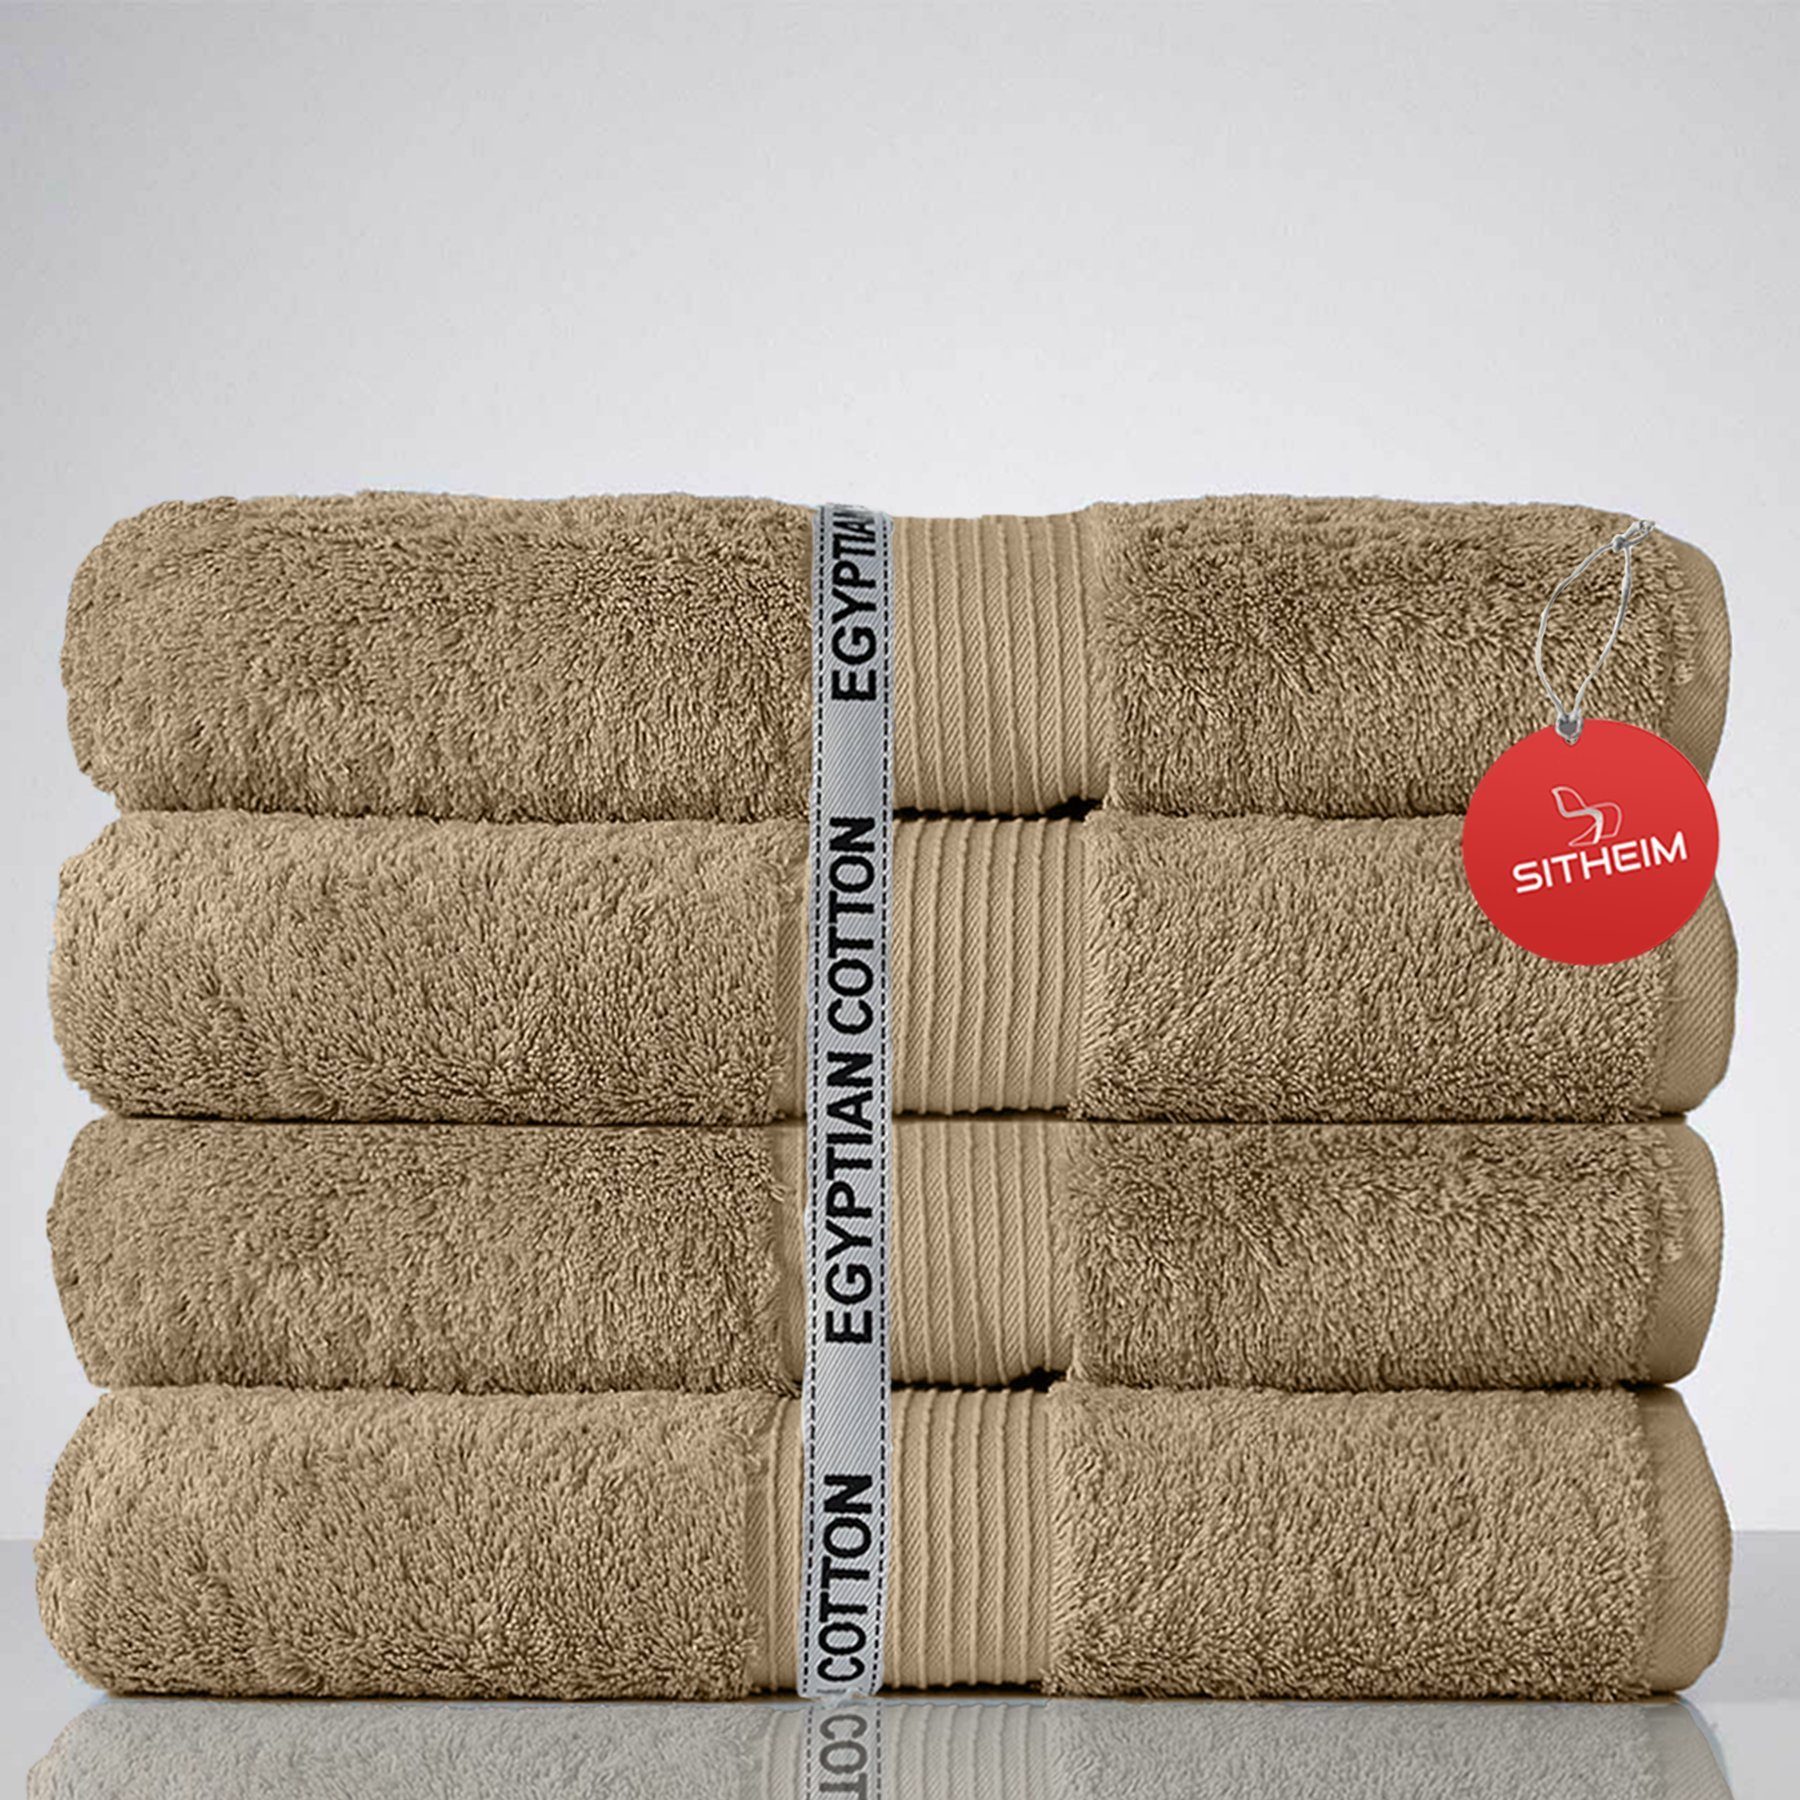 Sitheim-Europe Handtuch Set GIZA LINE I aus 100% Baumwolle (Spar-Set, 4-tlg) Duschtuchset, Ägyptische Baumwolle, (Spar-set, 4-tlg), 100% premium ägyptische Baumwolle, langlebig Beige | Handtuch-Sets